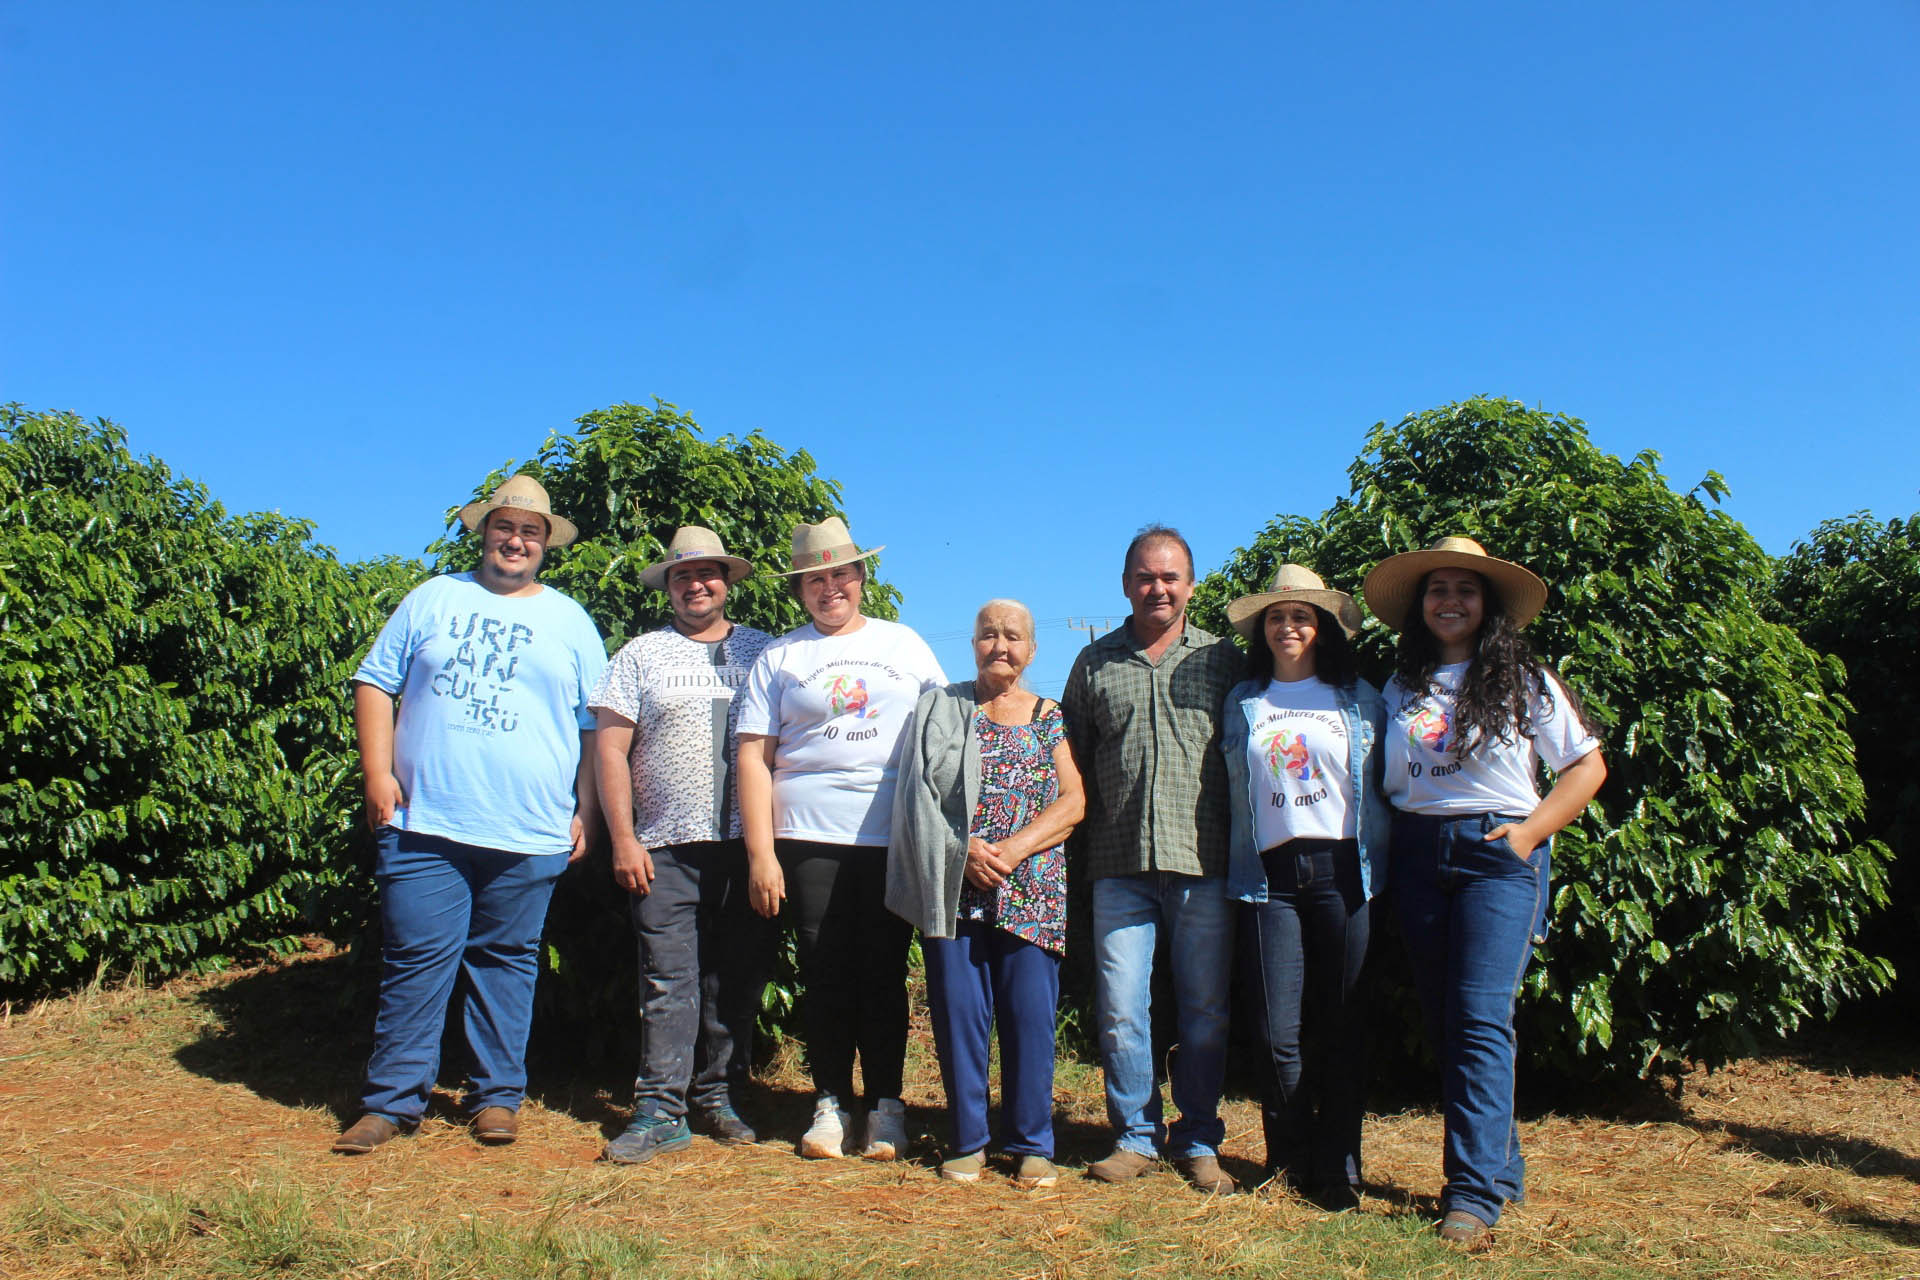 Visita técnica do Sistema Estadual de Agricultura a propriedades de café em Carlópolis